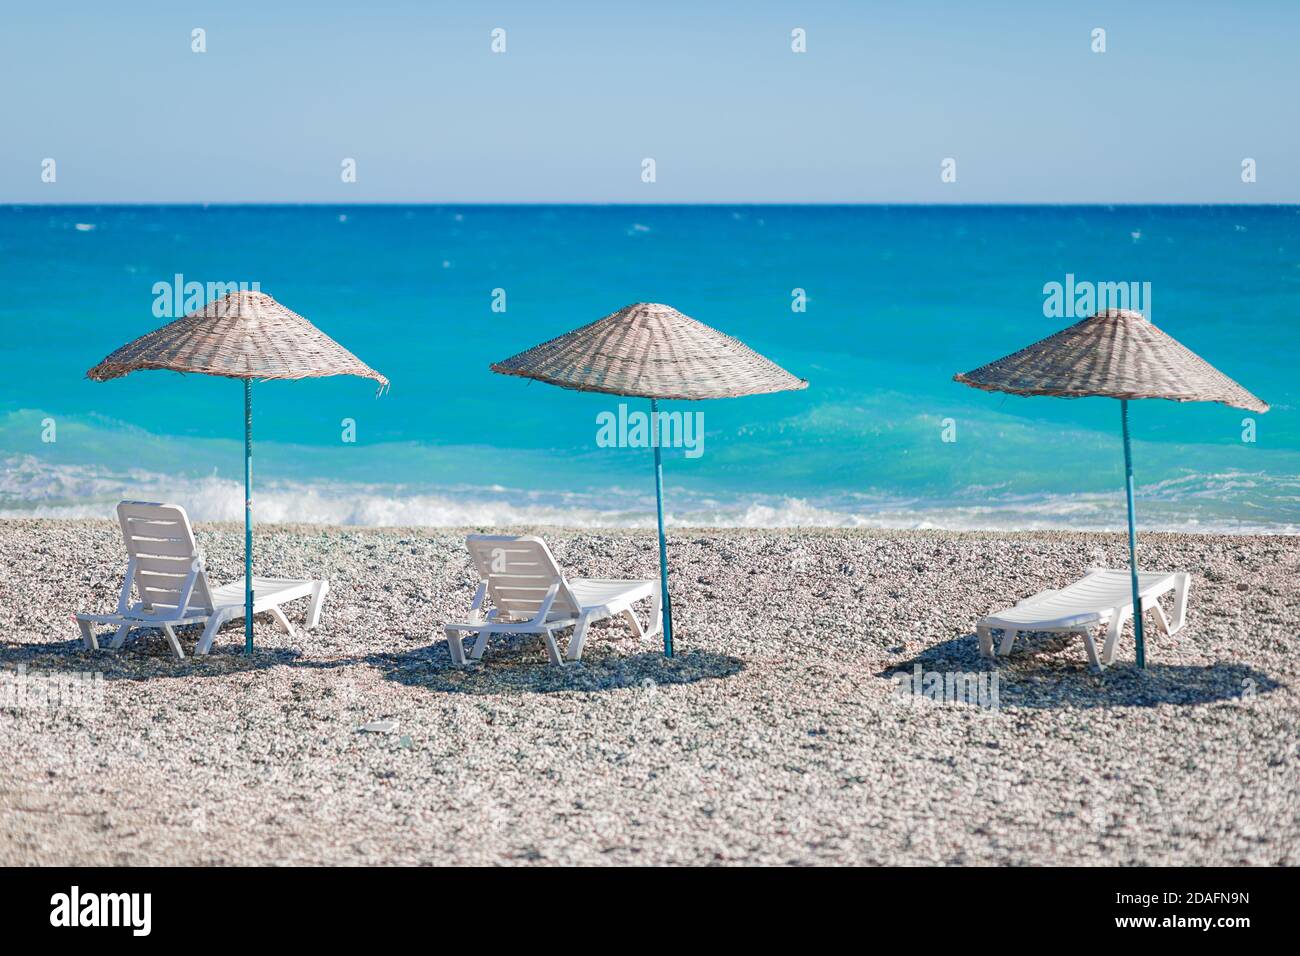 Très belle vue sur la plage avec des galets et l'océan bleu ou la mer azur avec des chaises longues blanches et des parasols en osier. Le concept d'un postc Banque D'Images